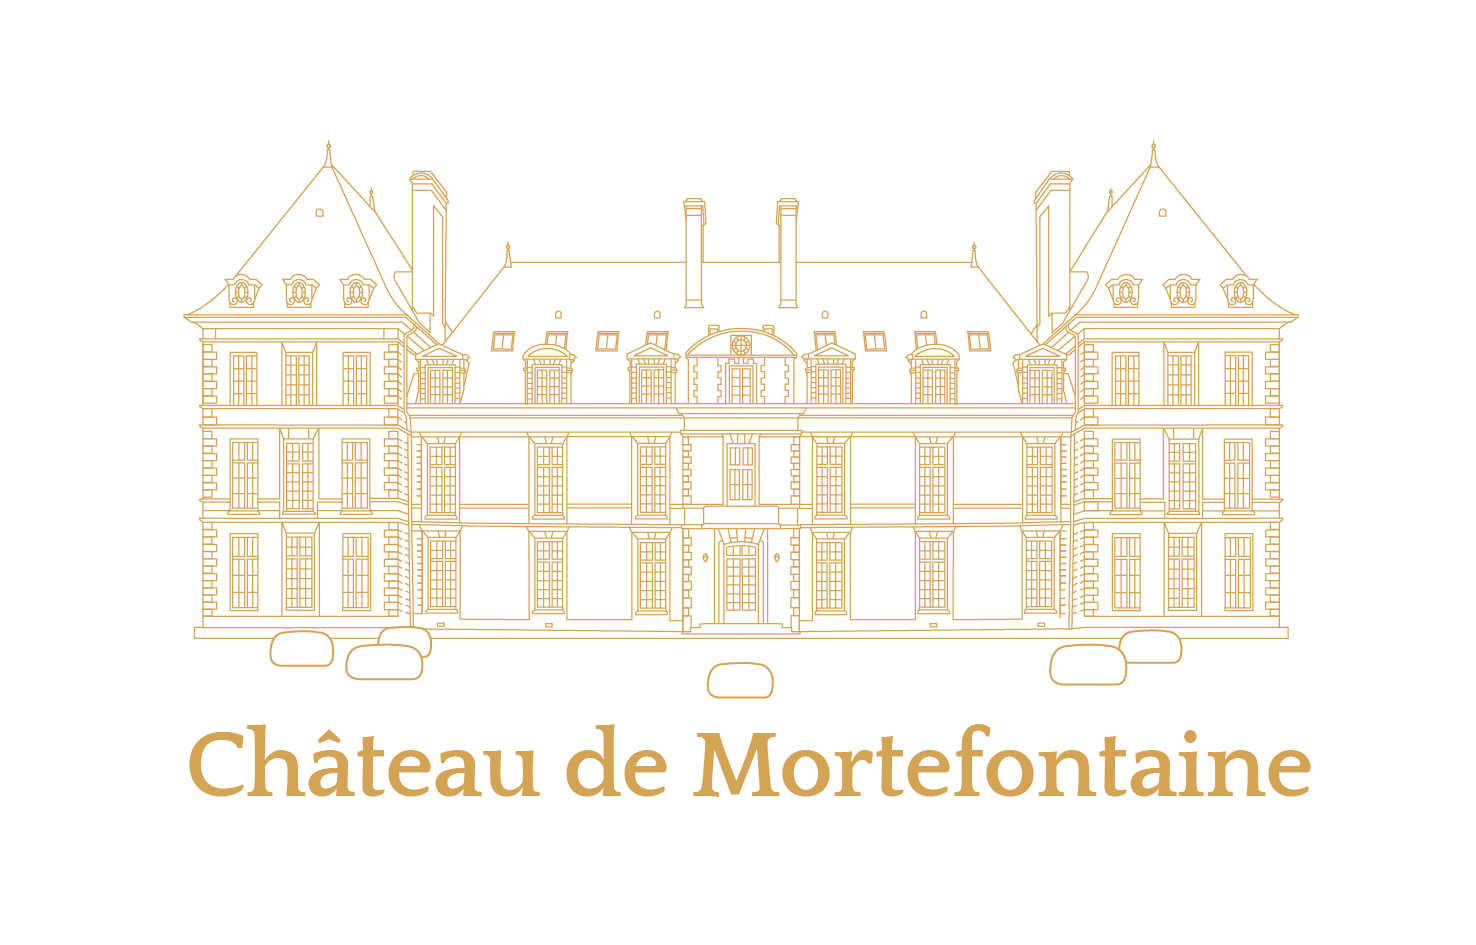 Chateau de Mortefontaine